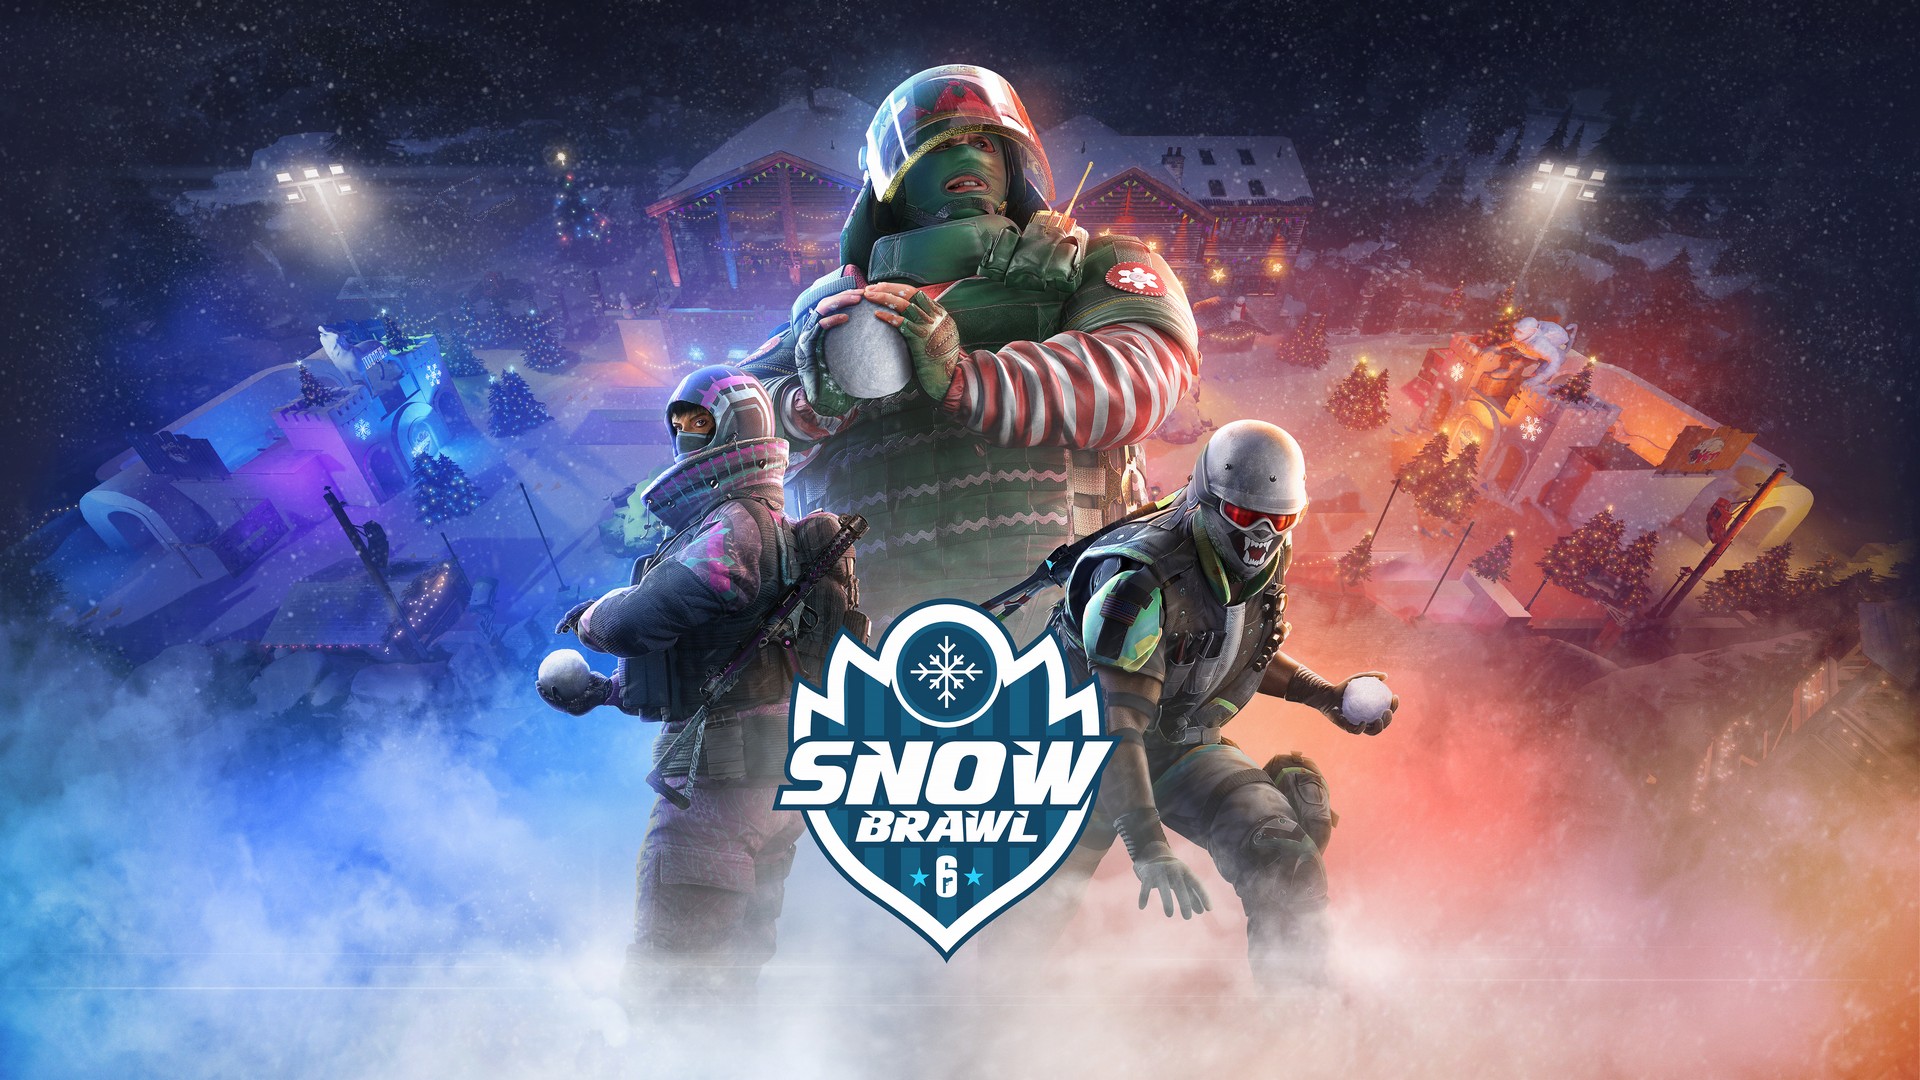 Tom Clancy’s Rainbow Six Siege’s Wintry Snow Brawl Event Launches Tomorrow